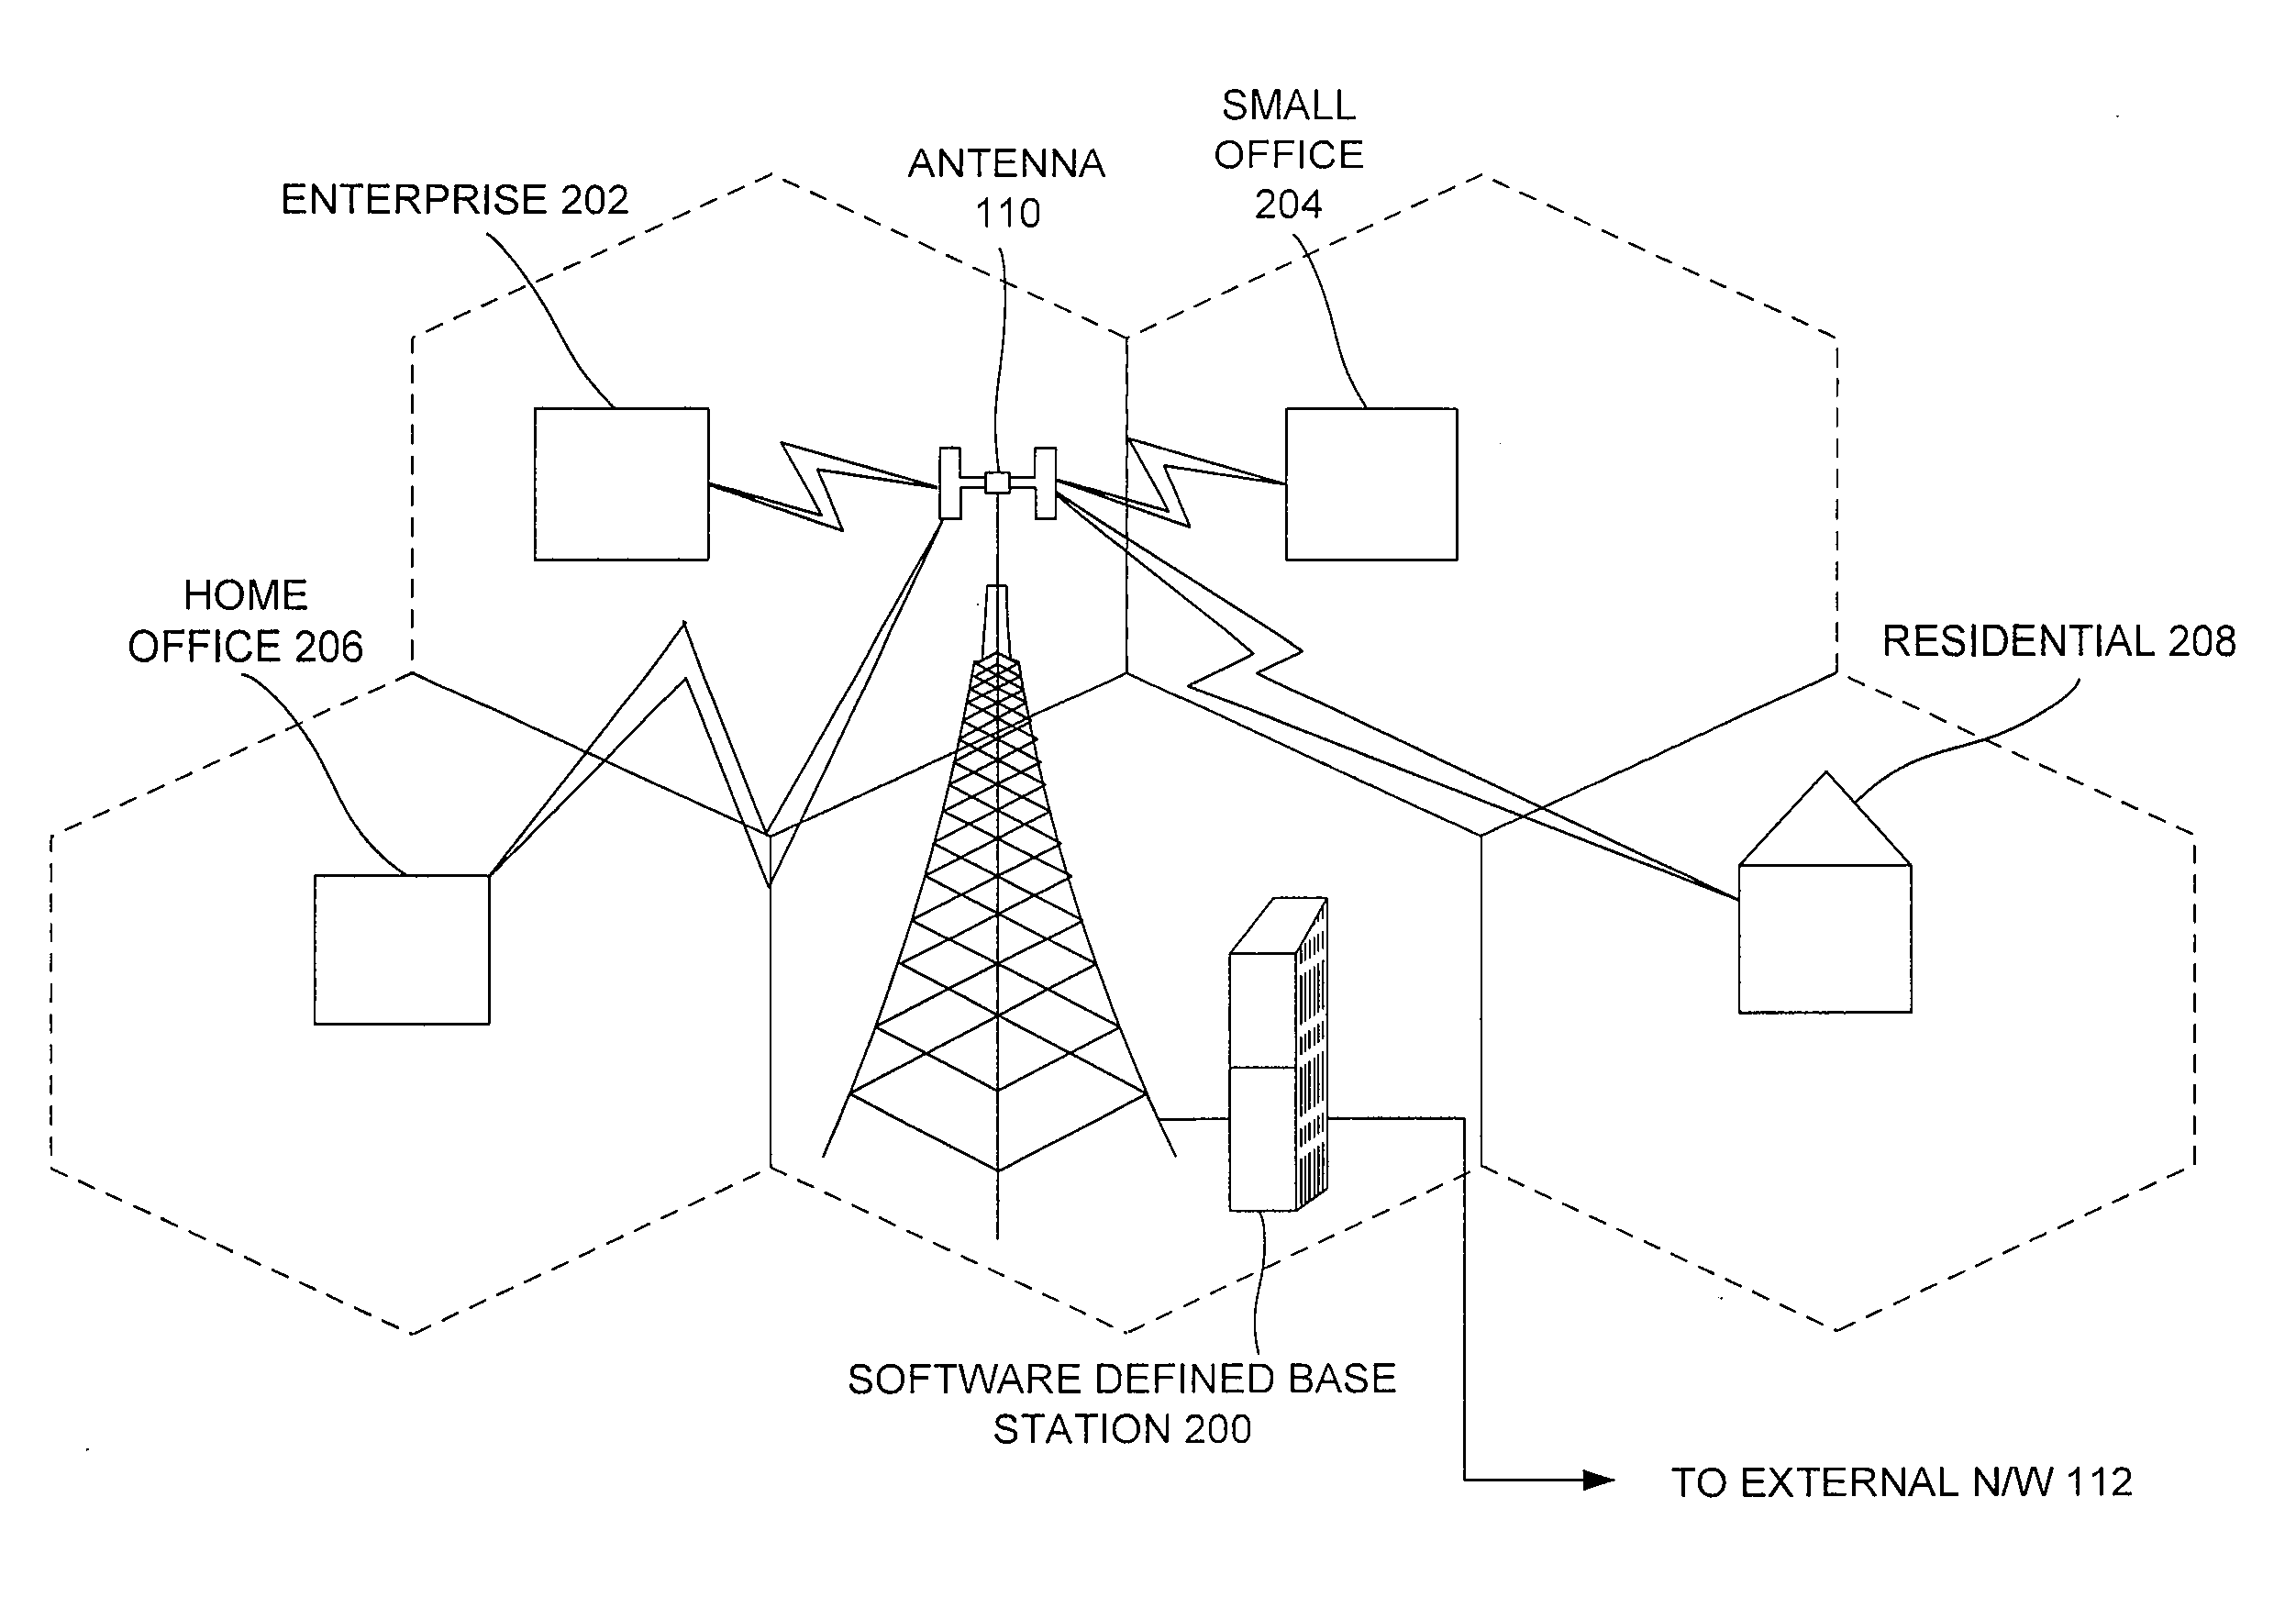 Software defined base station